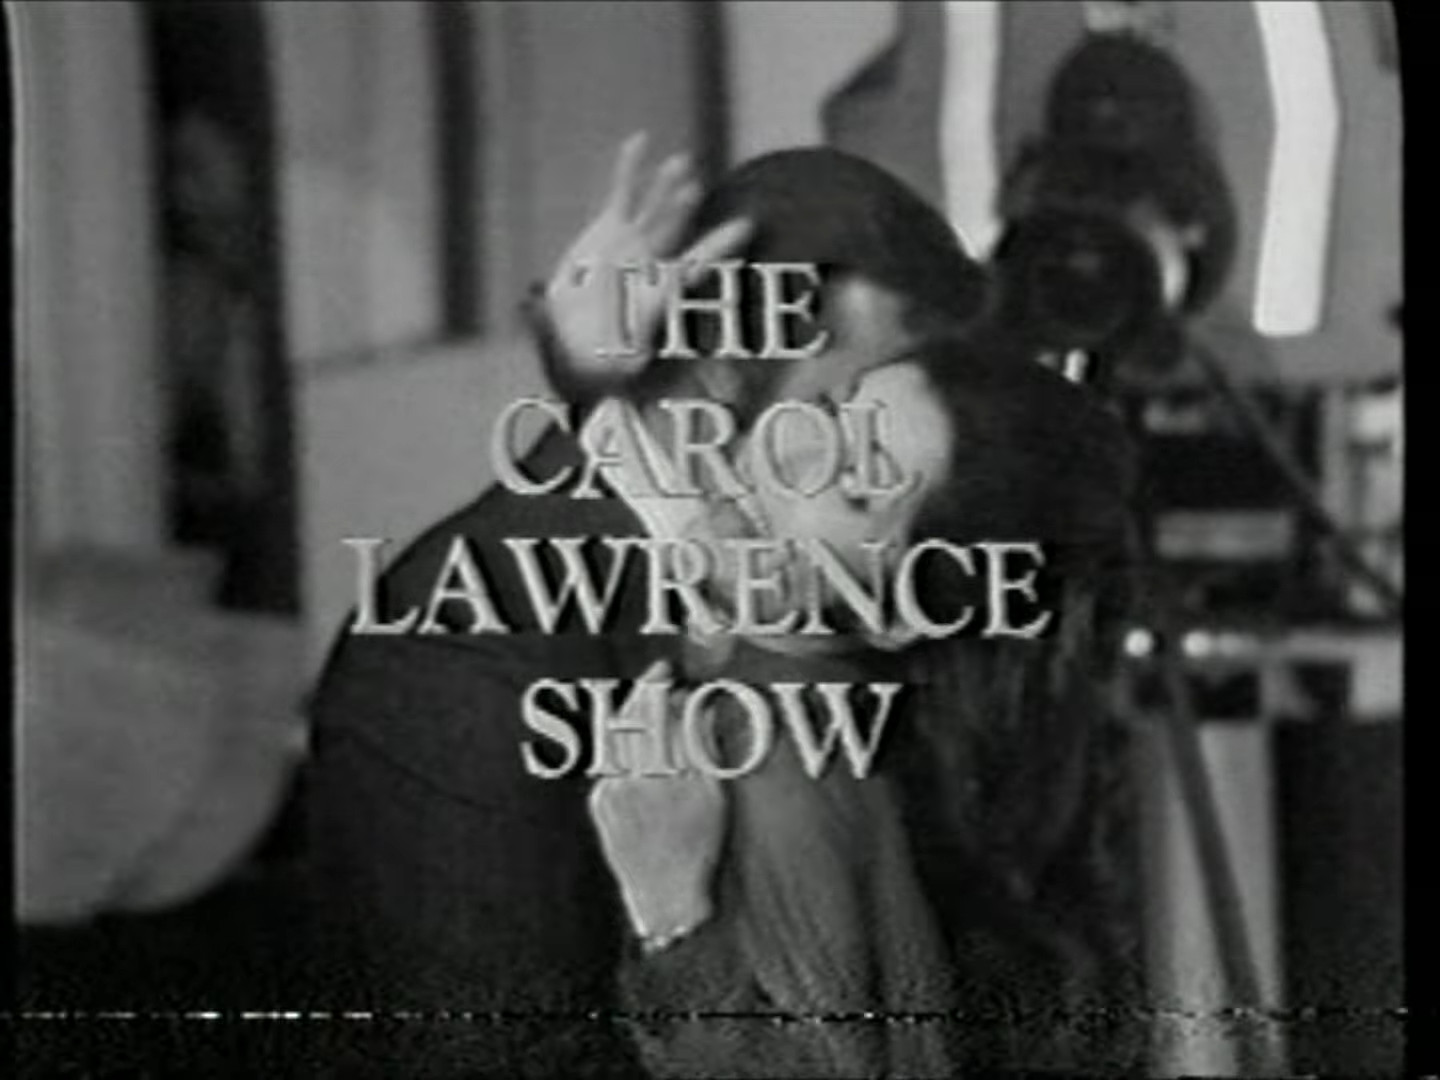 The Carol Lawrence Show - The Carol Lawrence Show (found unaired pilot of daytime talk show; 1969)